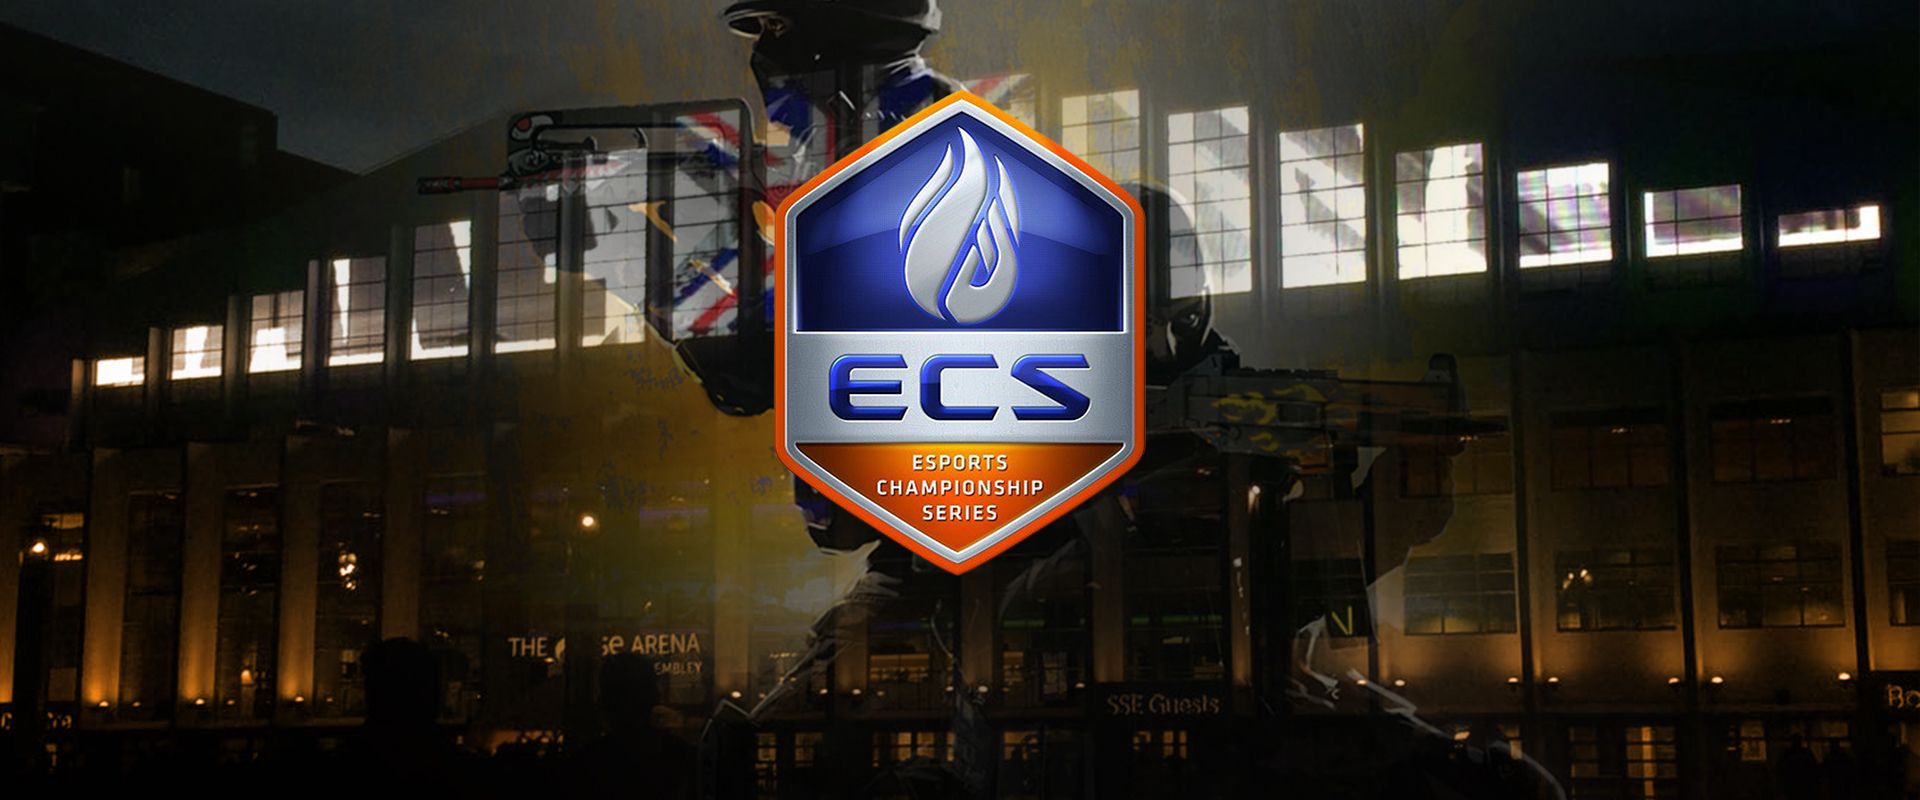 Holnap kezdődik az ECS fináléja, itt a verseny menetrendje